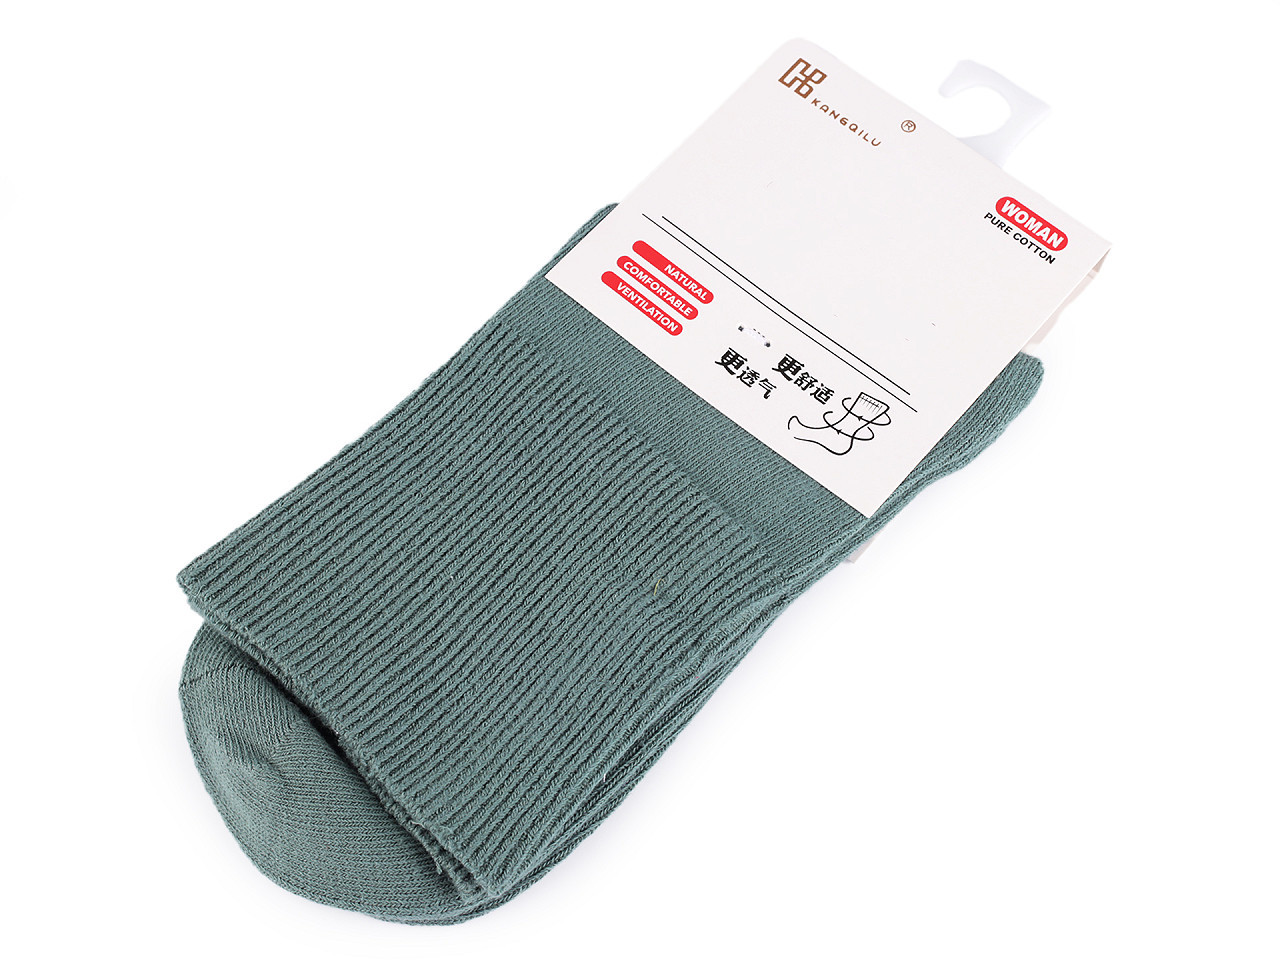 Dámské / dívčí bavlněné ponožky se zdravotním lemem, barva 4 zelená šalvěj tmavá